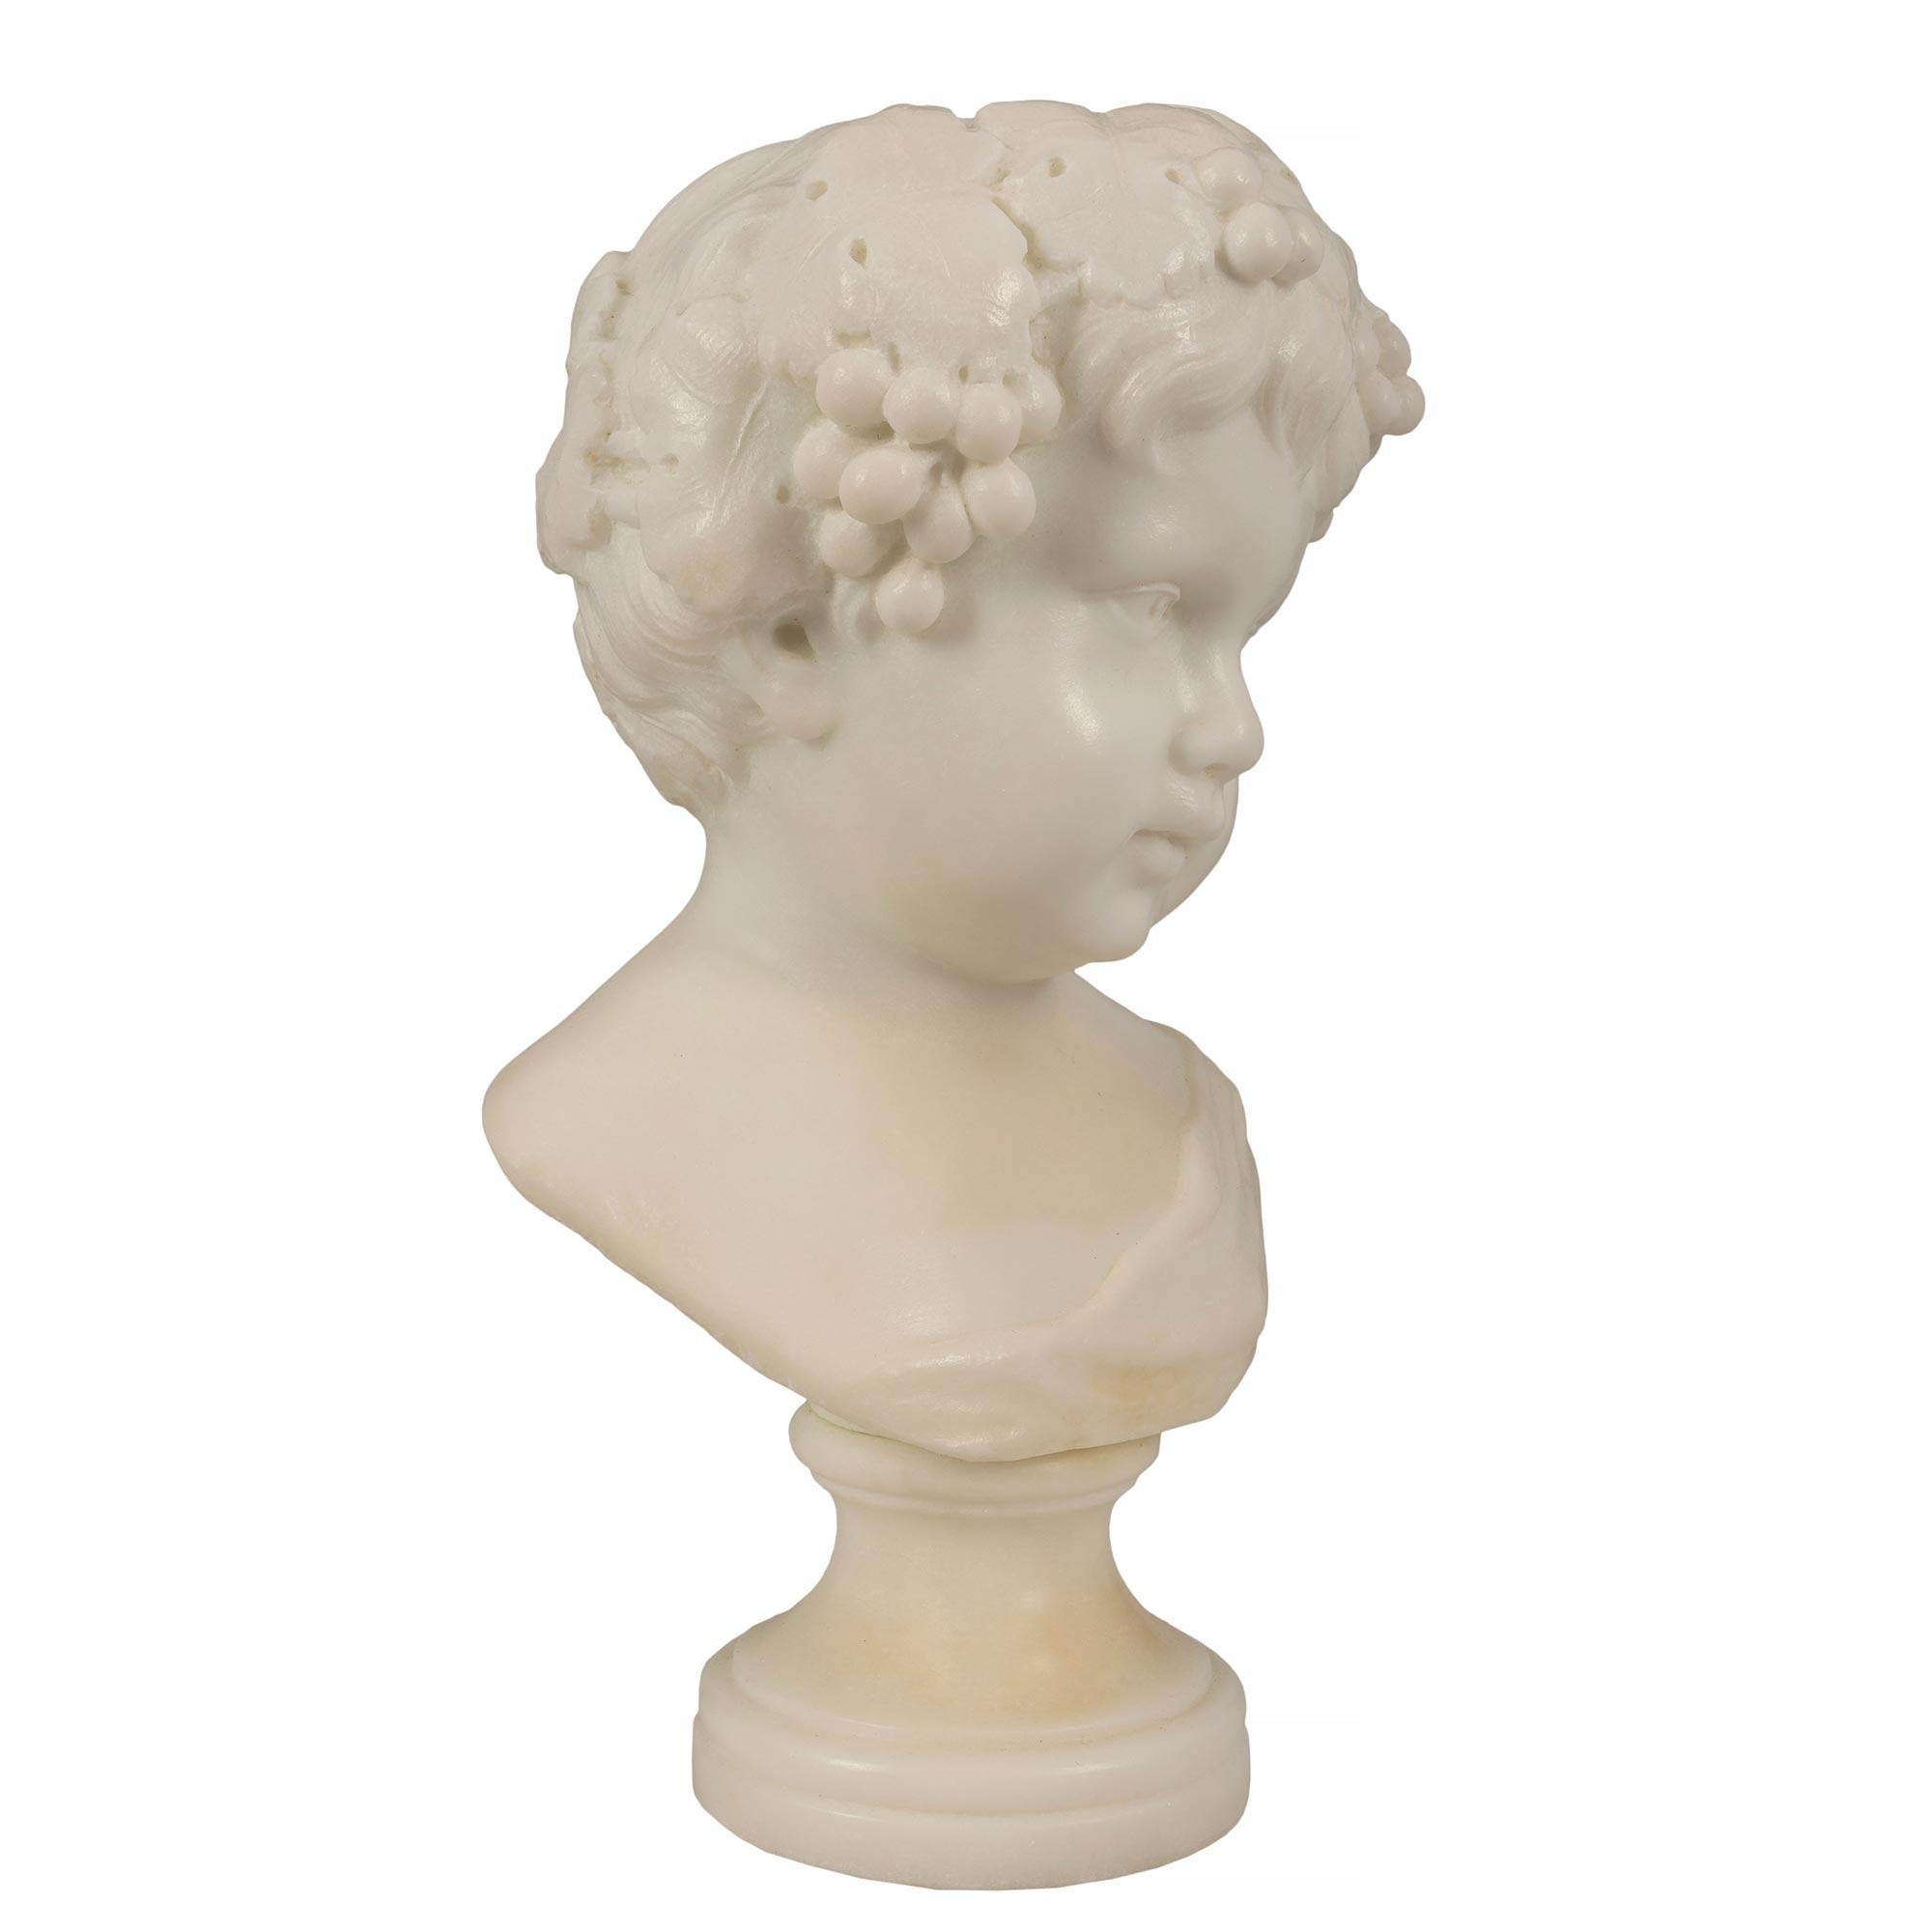 Charmante paire de bustes en marbre blanc de Carrare du XIXe siècle représentant le jeune Bacchus. Chaque buste est surélevé par des socles circulaires. Avec de belles expressions souriantes et une couronne de grappes de raisin dans les cheveux.